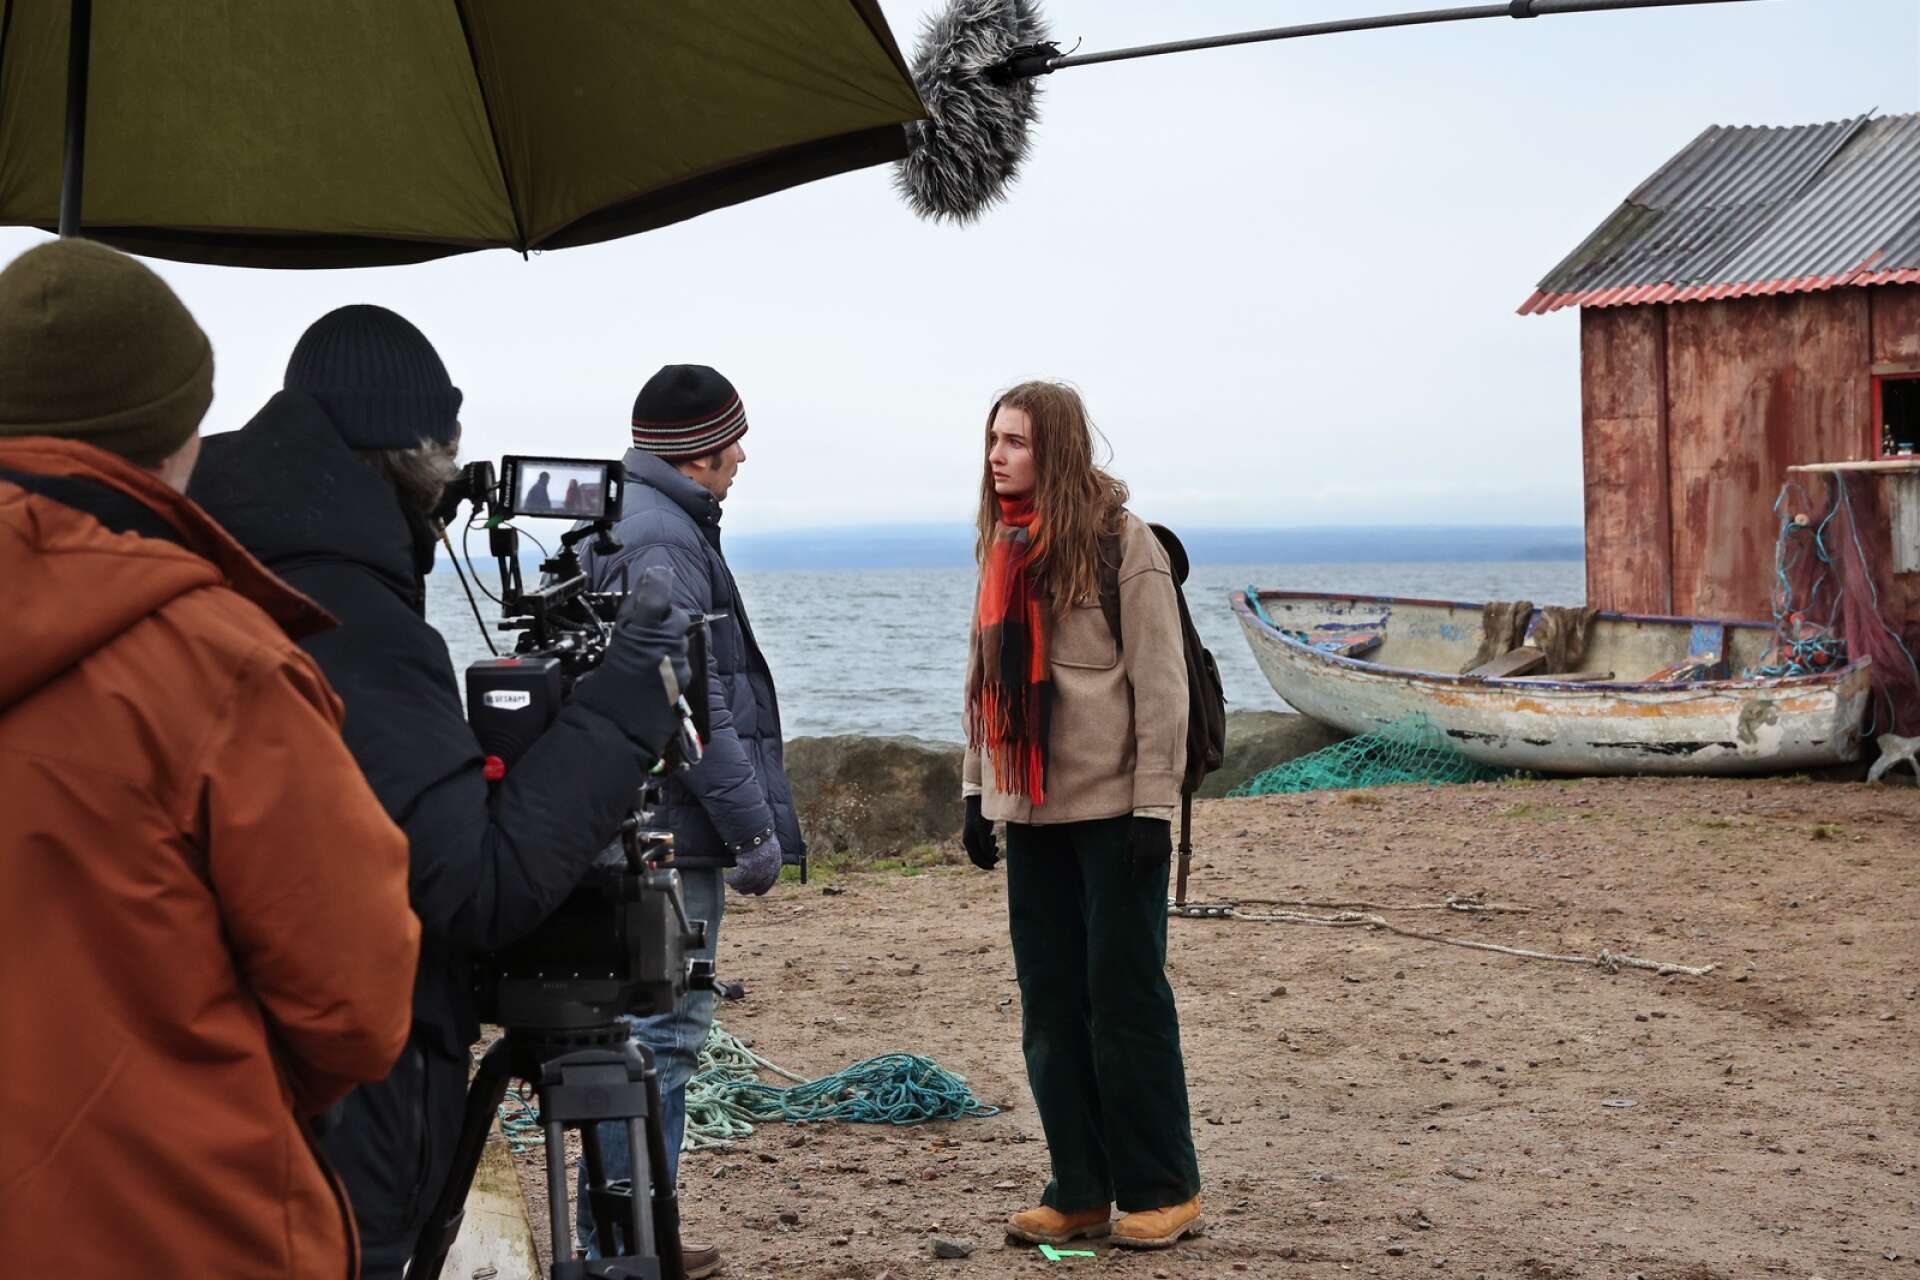 Laura, gestaltad av Amaryllis April August, är på flykt efter att Danmark svämmats över i tv-serien En familj som vår. Denna scen, filmad i Östra hamnen, utspelar sig i Ryssland.